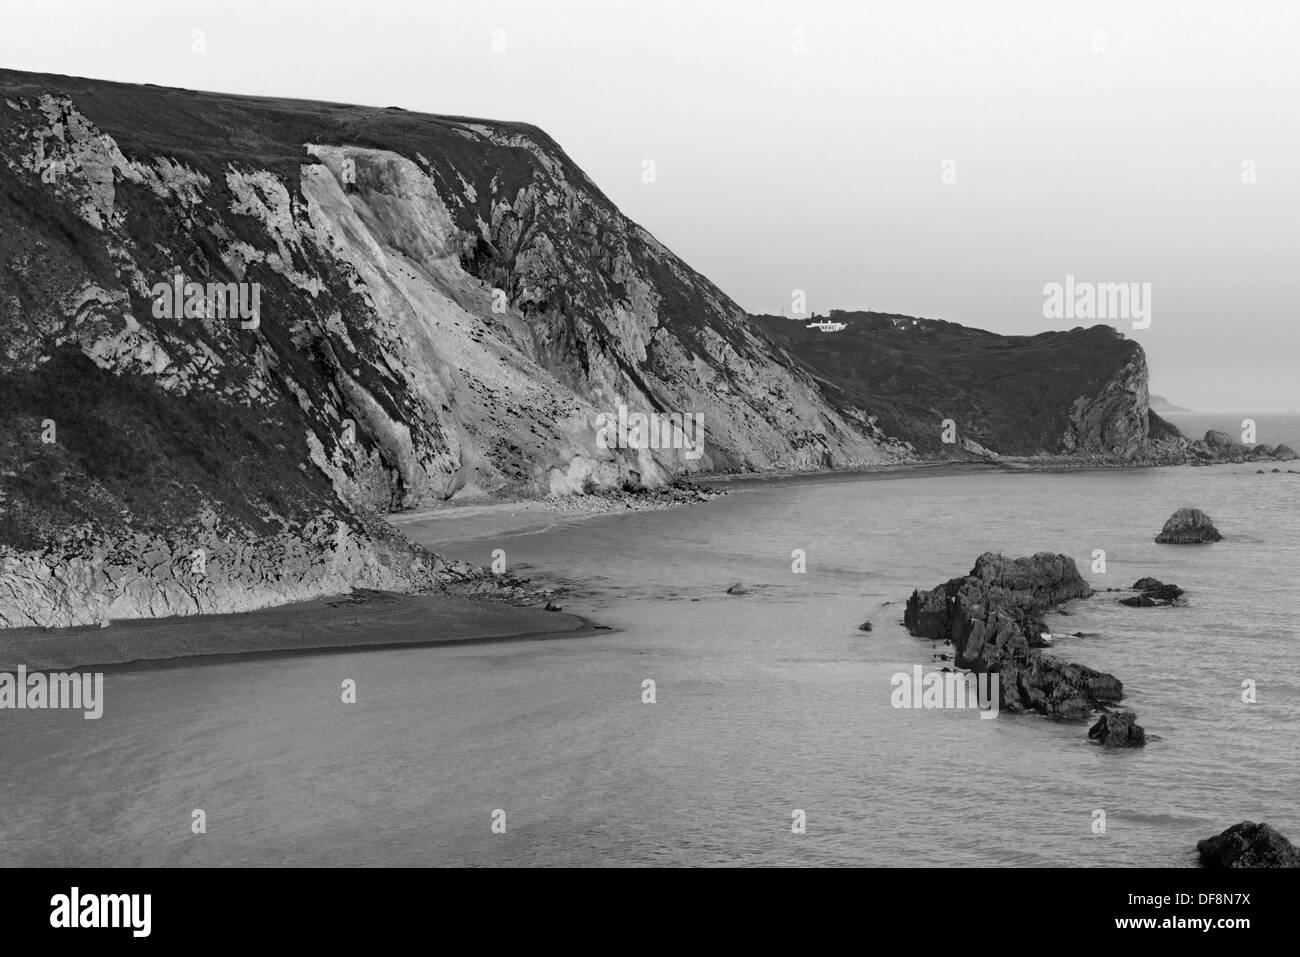 Côté Est de Durdle Door, Durdle Dor, surplombant St Oswald's Bay, Dorset, England, UK (Jurassic Coast) en noir et blanc Banque D'Images